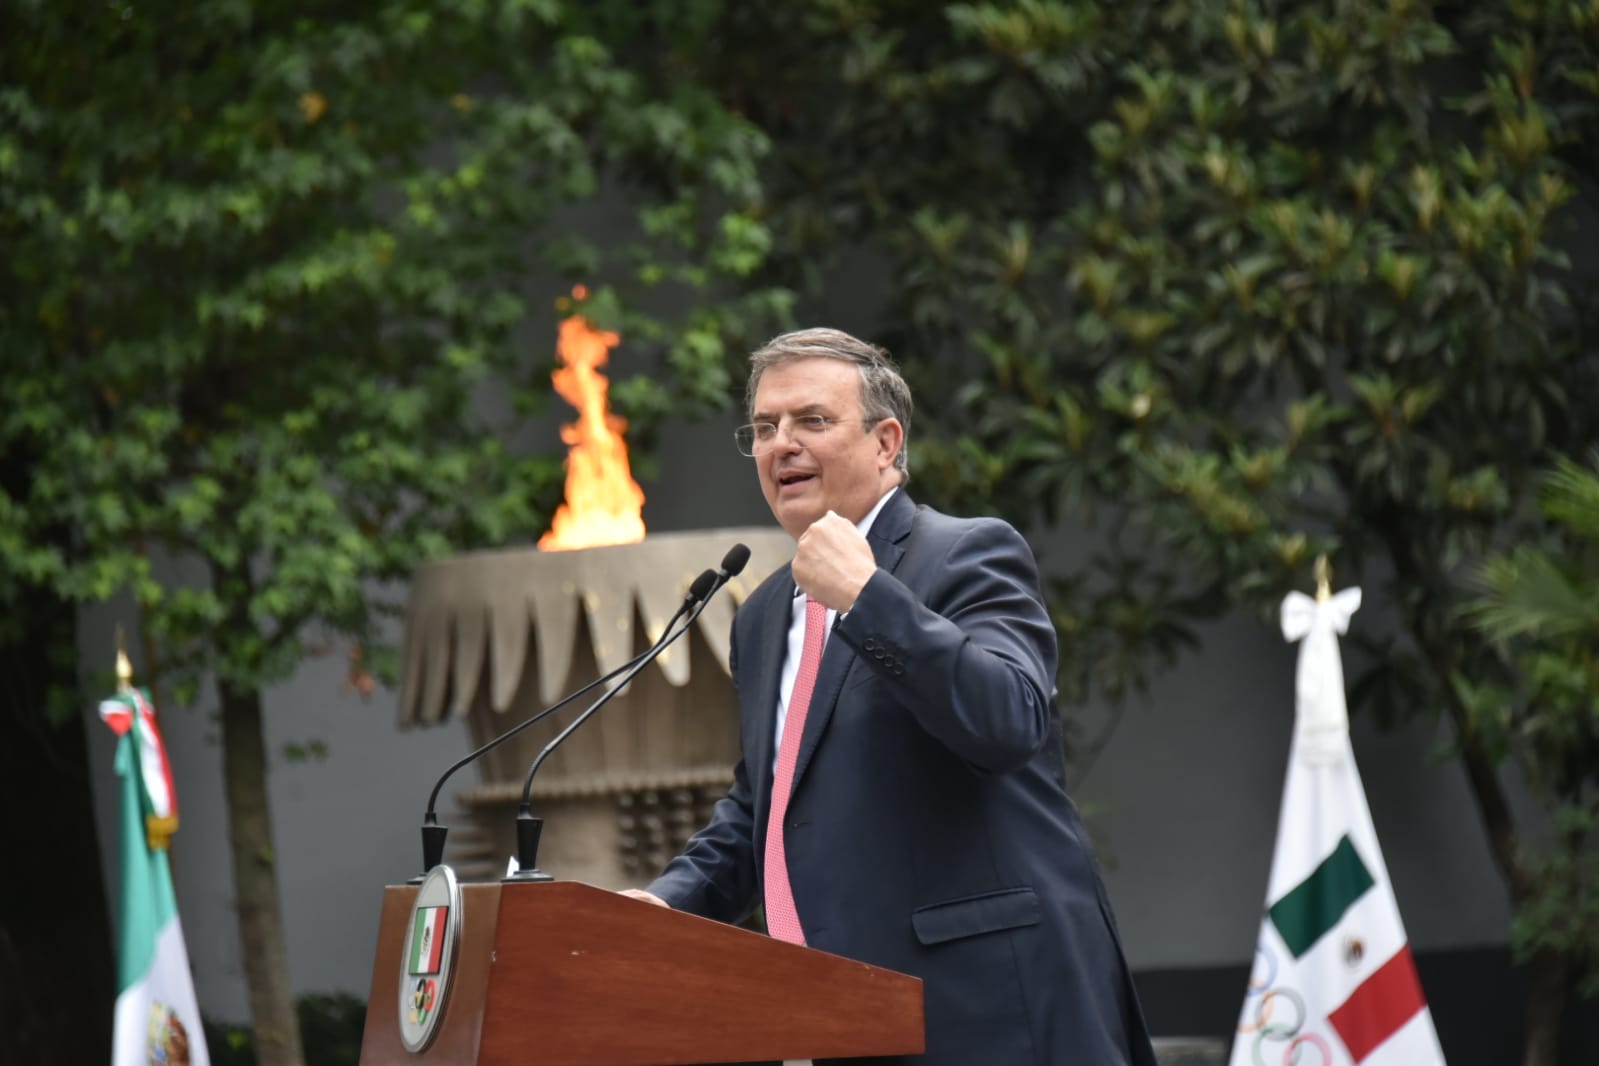 Canciller Ebrard propone nuevos Juegos Olímpicos para México